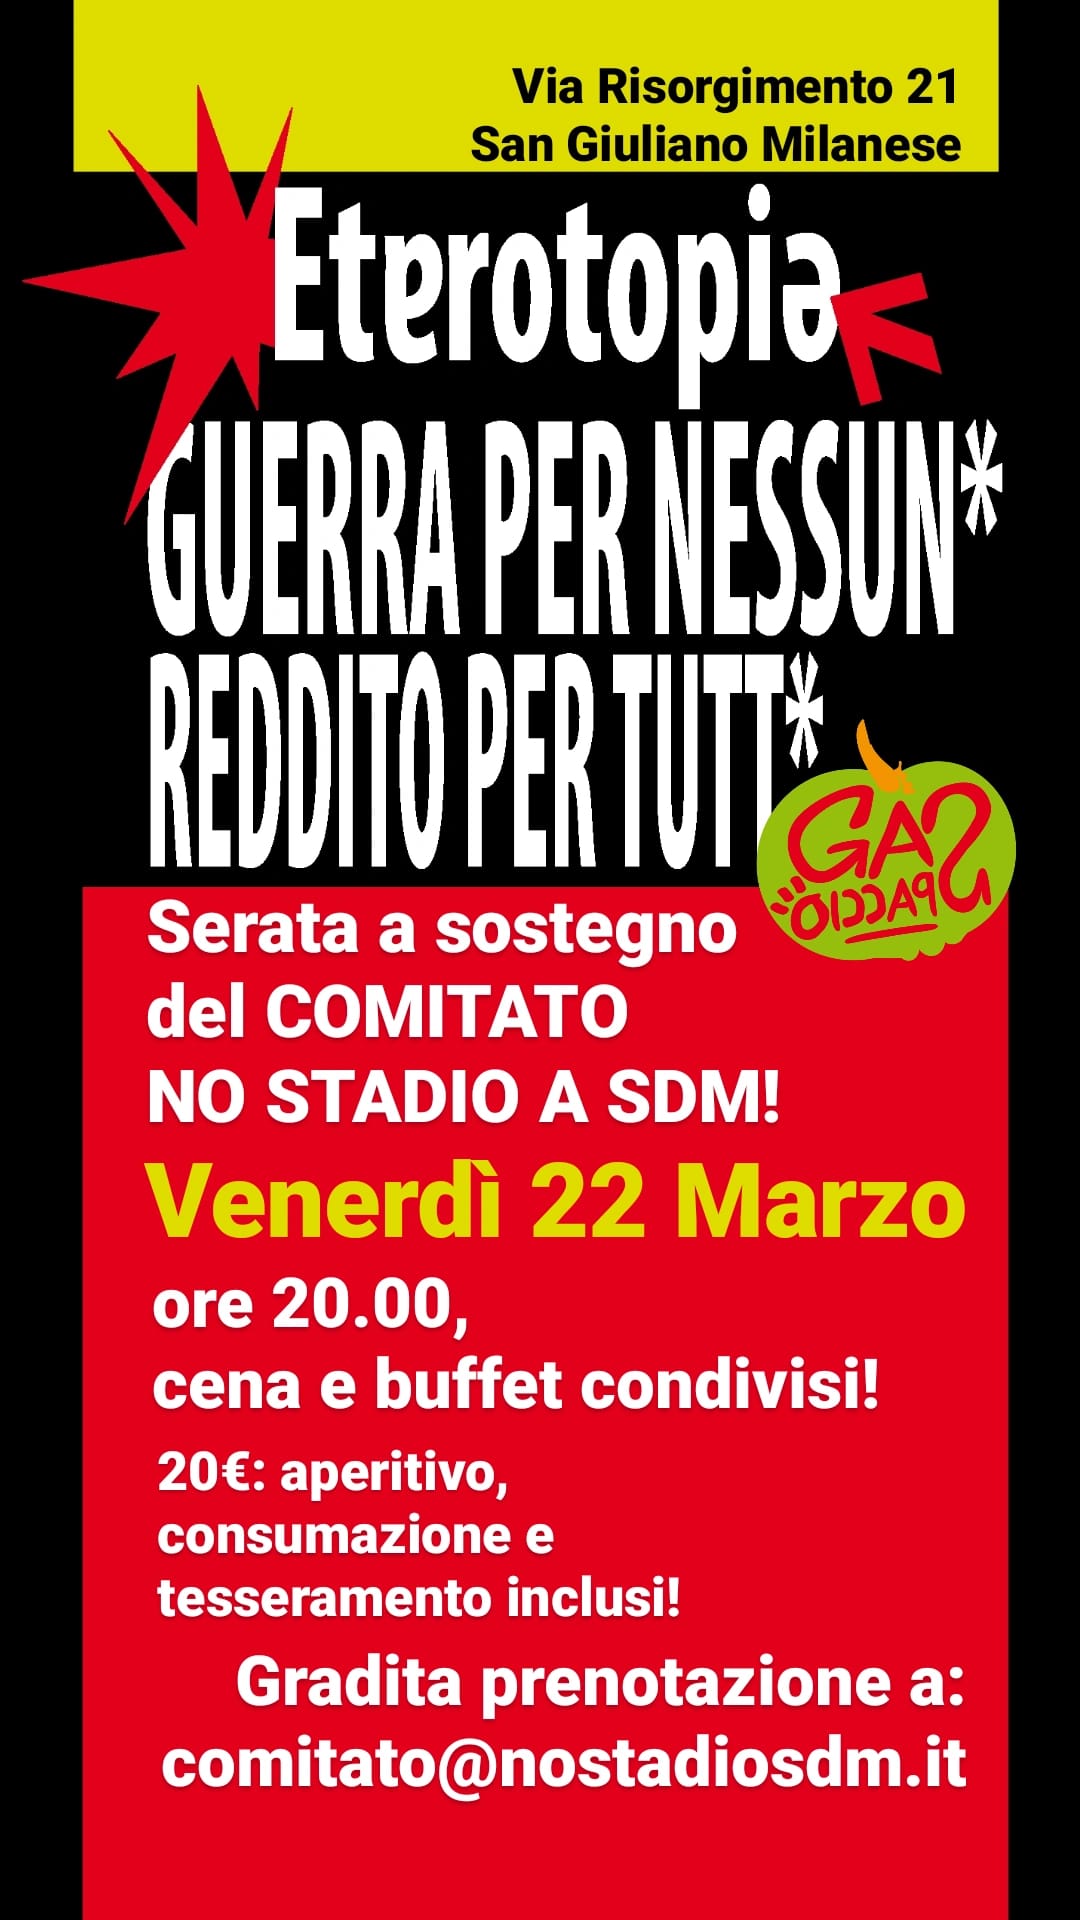 Venerdì 22 Marzo: NO STADIO A SDM!